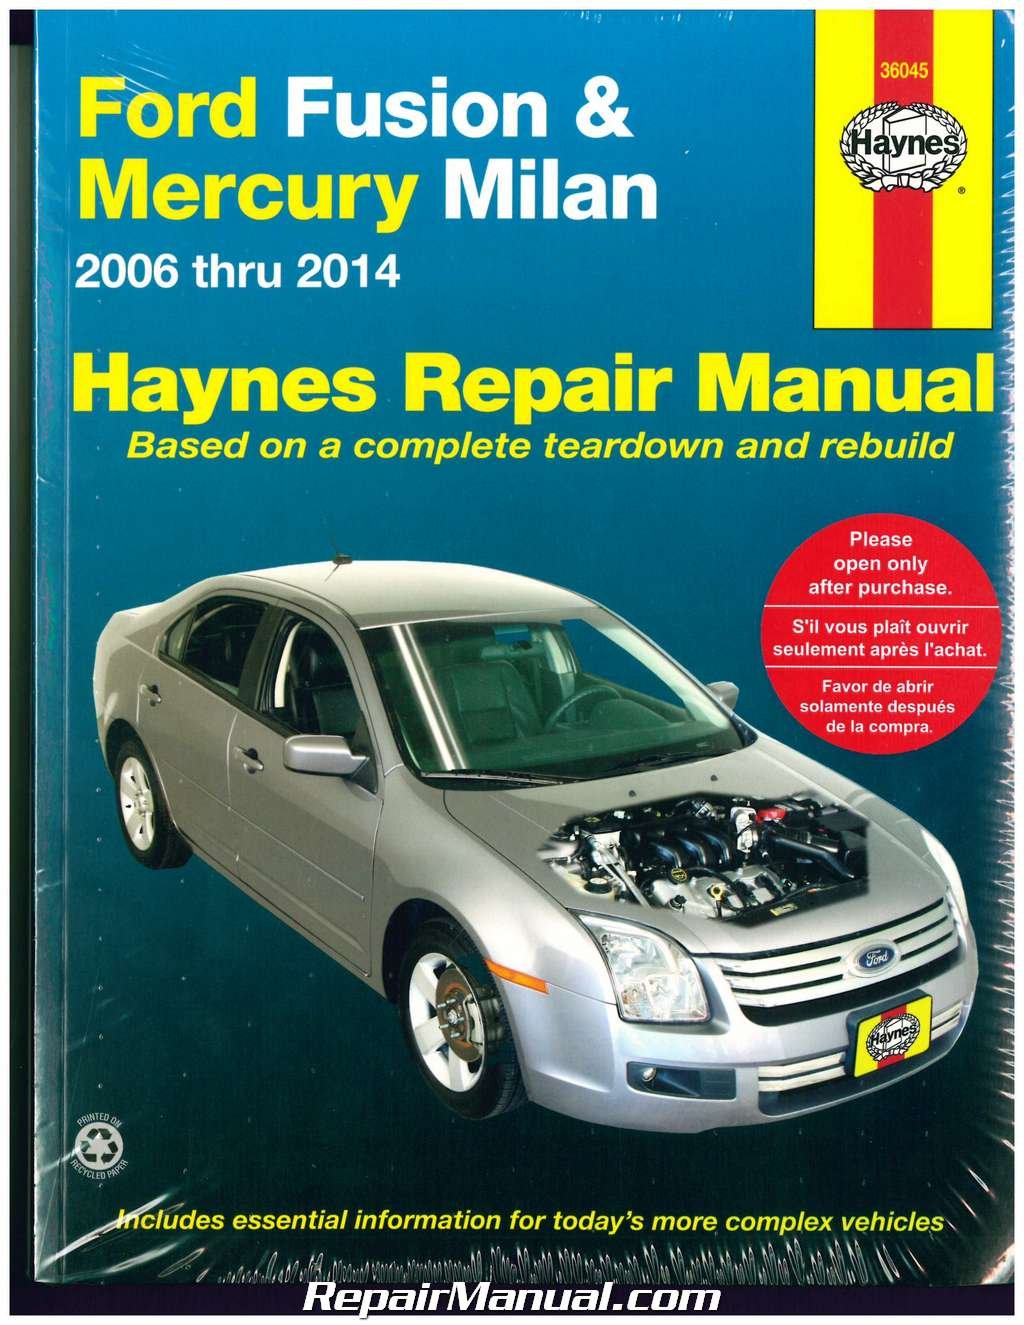 Free haynes repair manual download